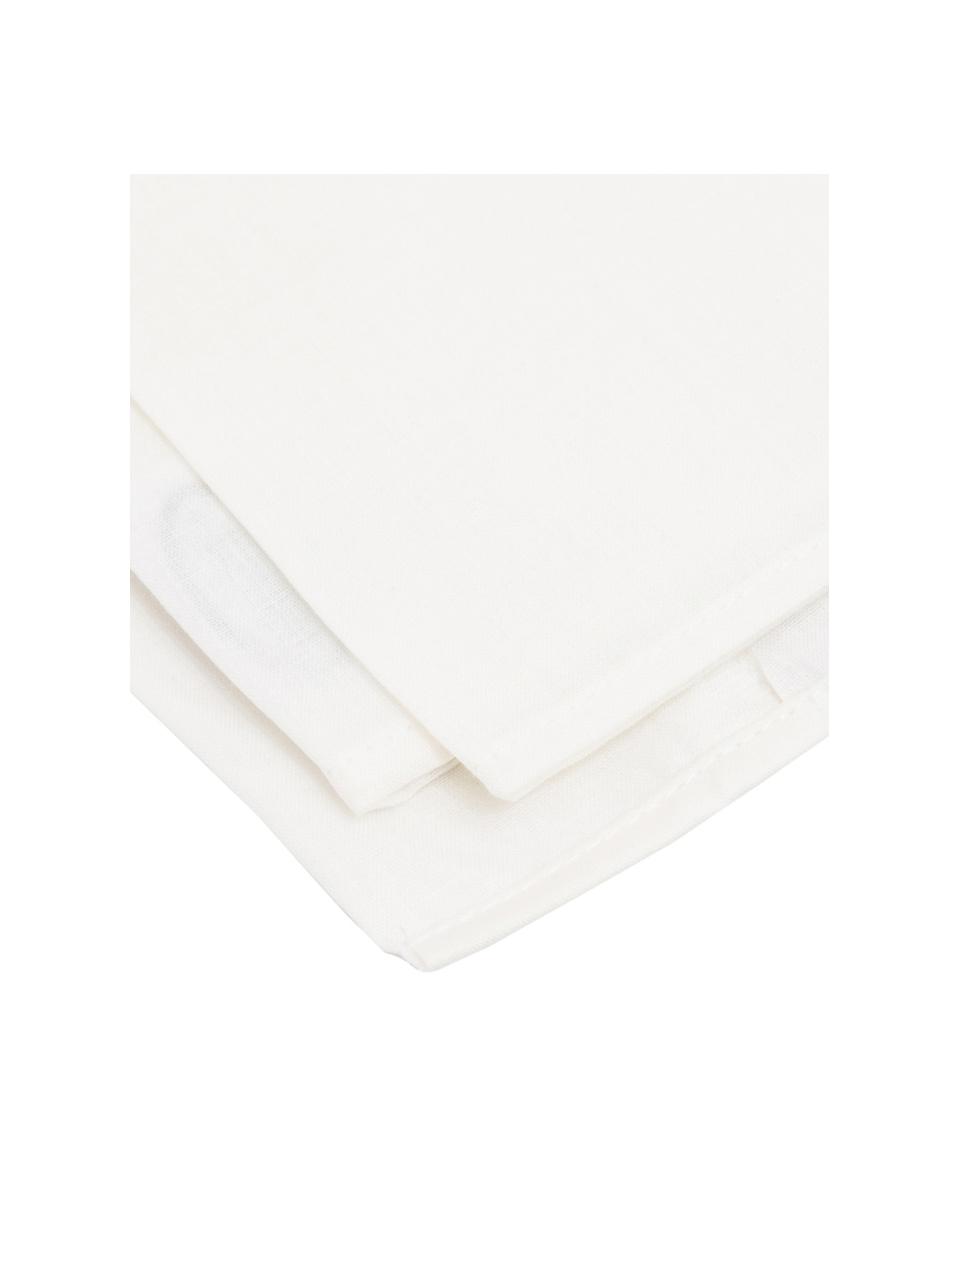 Set lenzuola in cotone avorio Lenare, Fronte e retro: avorio chiaro, 150 x 290 cm + 1 federa 50 x 80 cm